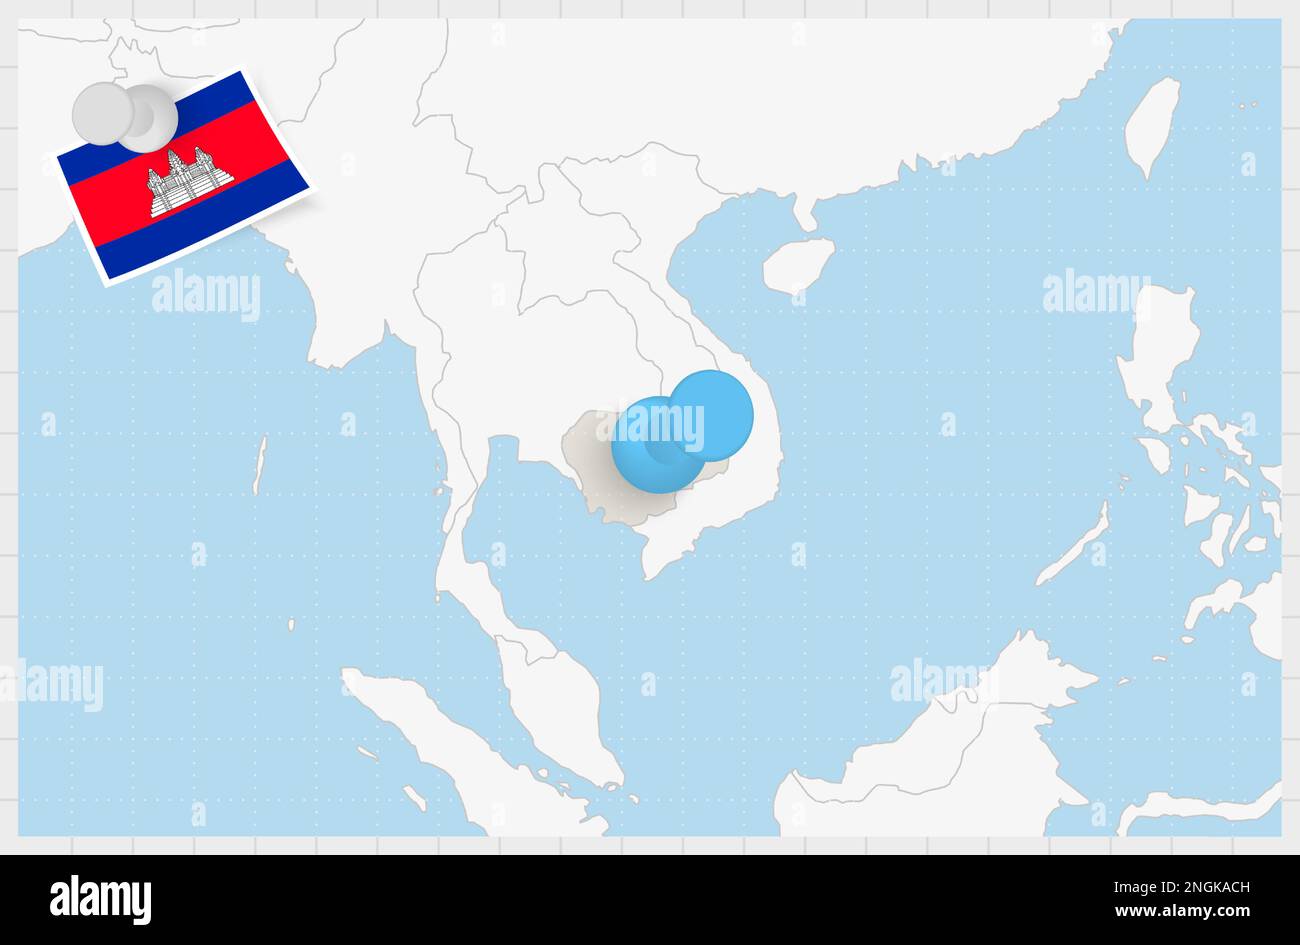 Karte von Kambodscha mit einer blauen Nadel. Festsitzende Flagge Kambodschas, Vektordarstellung. Stock Vektor